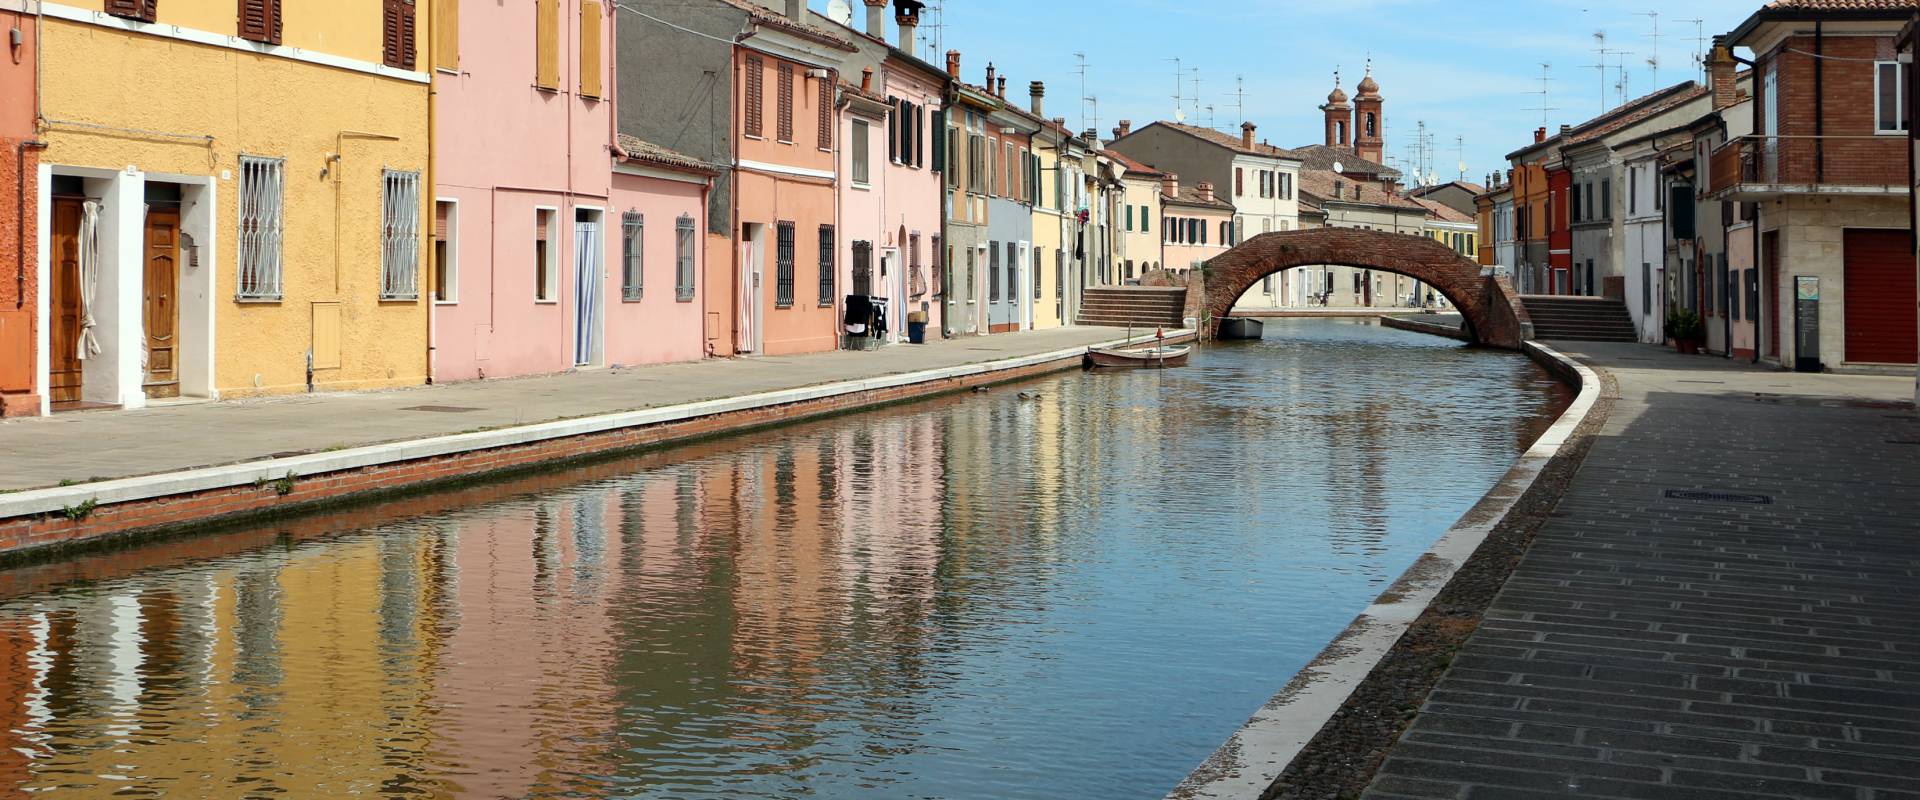 Comacchio, canale maggiore presso via san pietro, 02 photo by Sailko